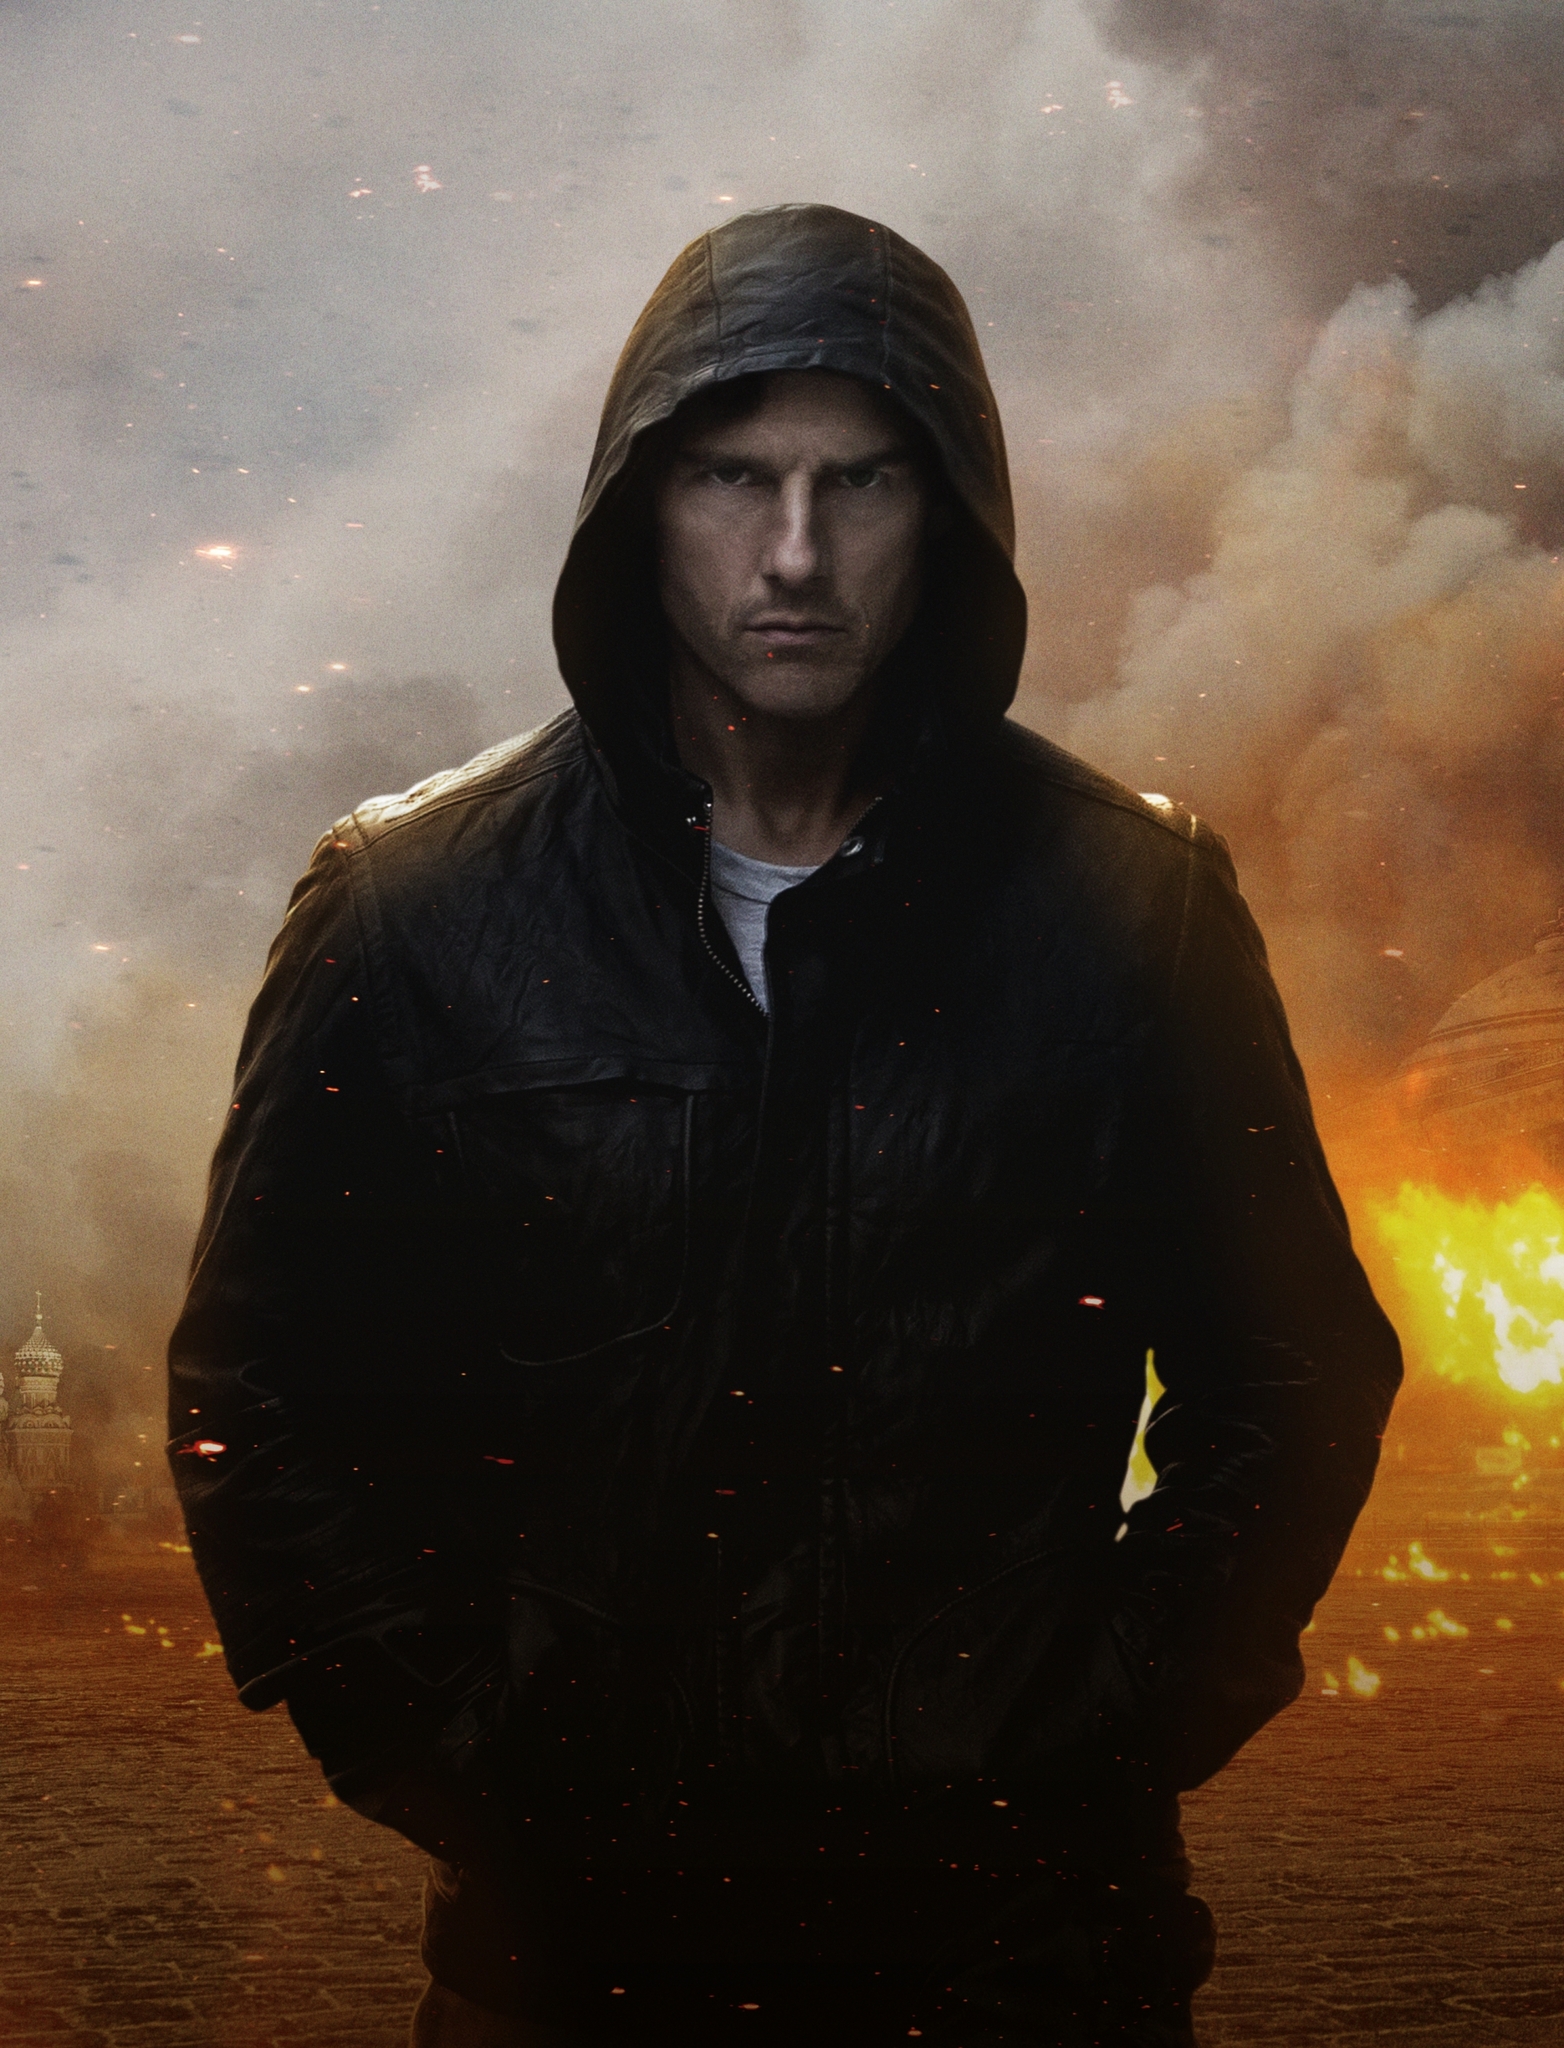 Still of Tom Cruise in Neimanoma misija. Smeklos protokolas (2011)